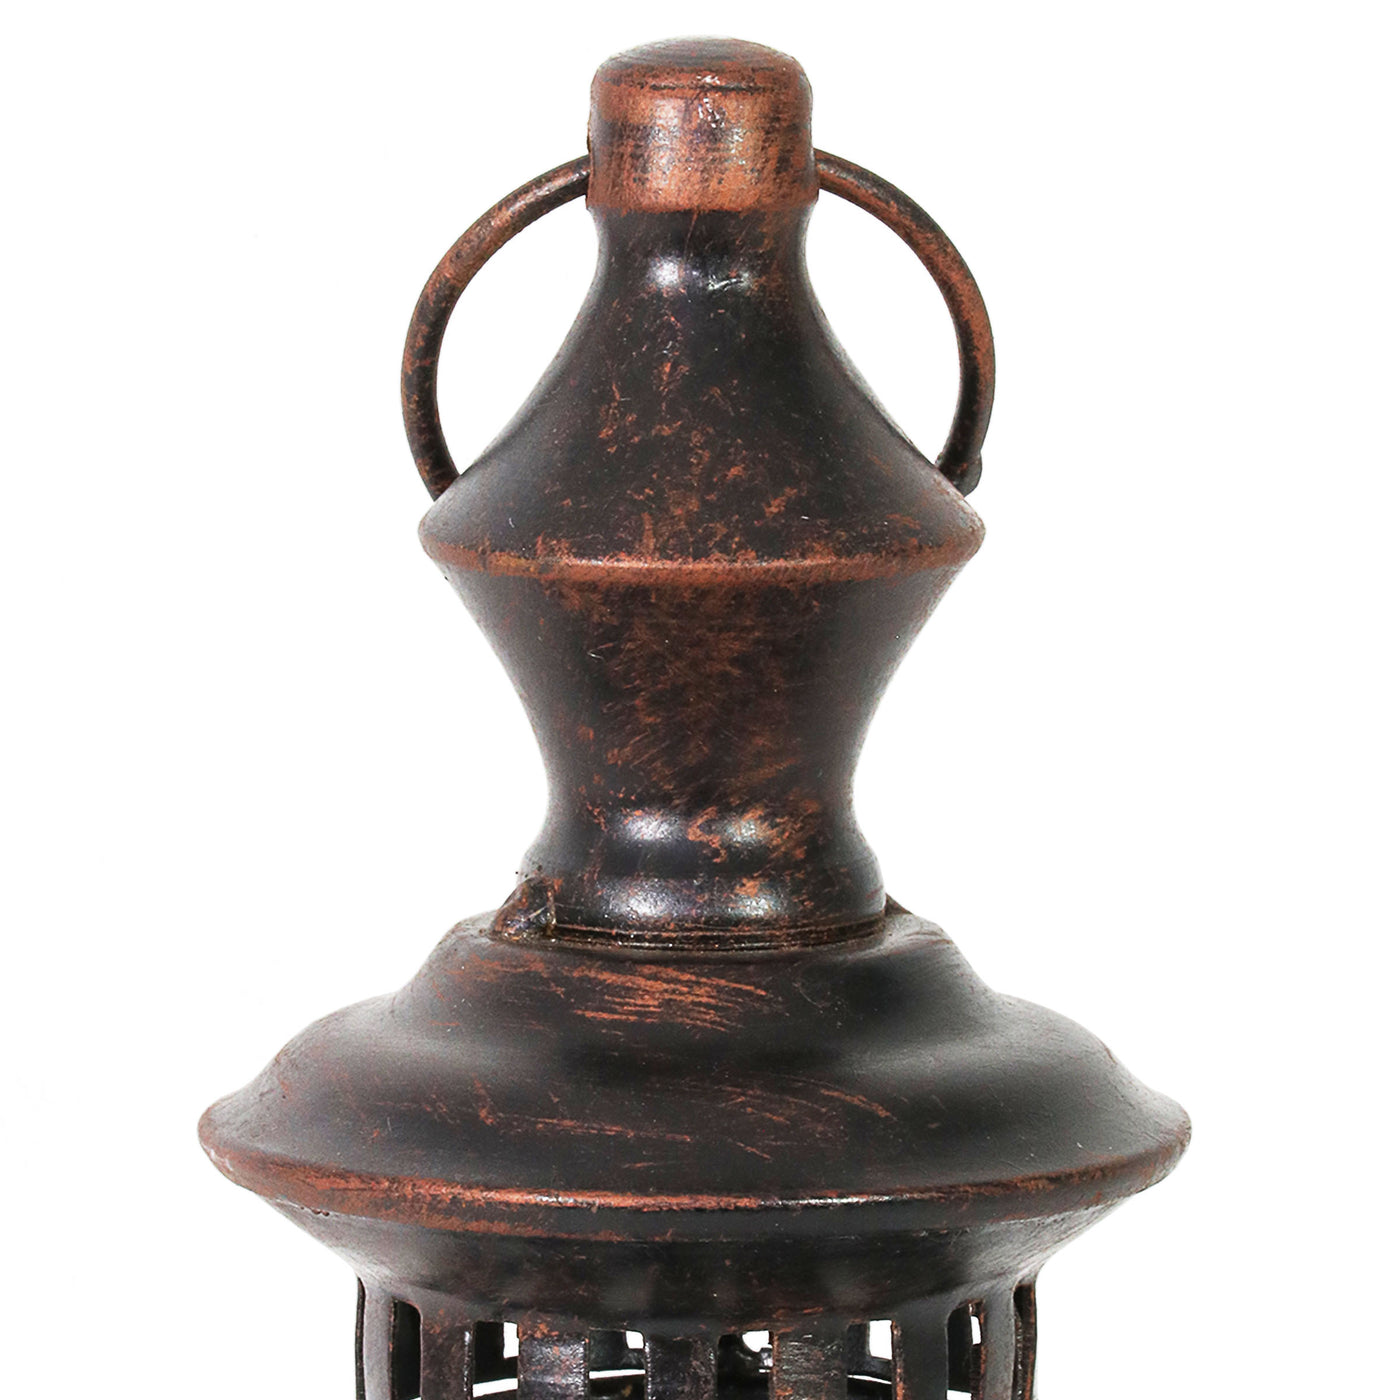 Hurricane Oil Lantern - Antique Brass - 12.5